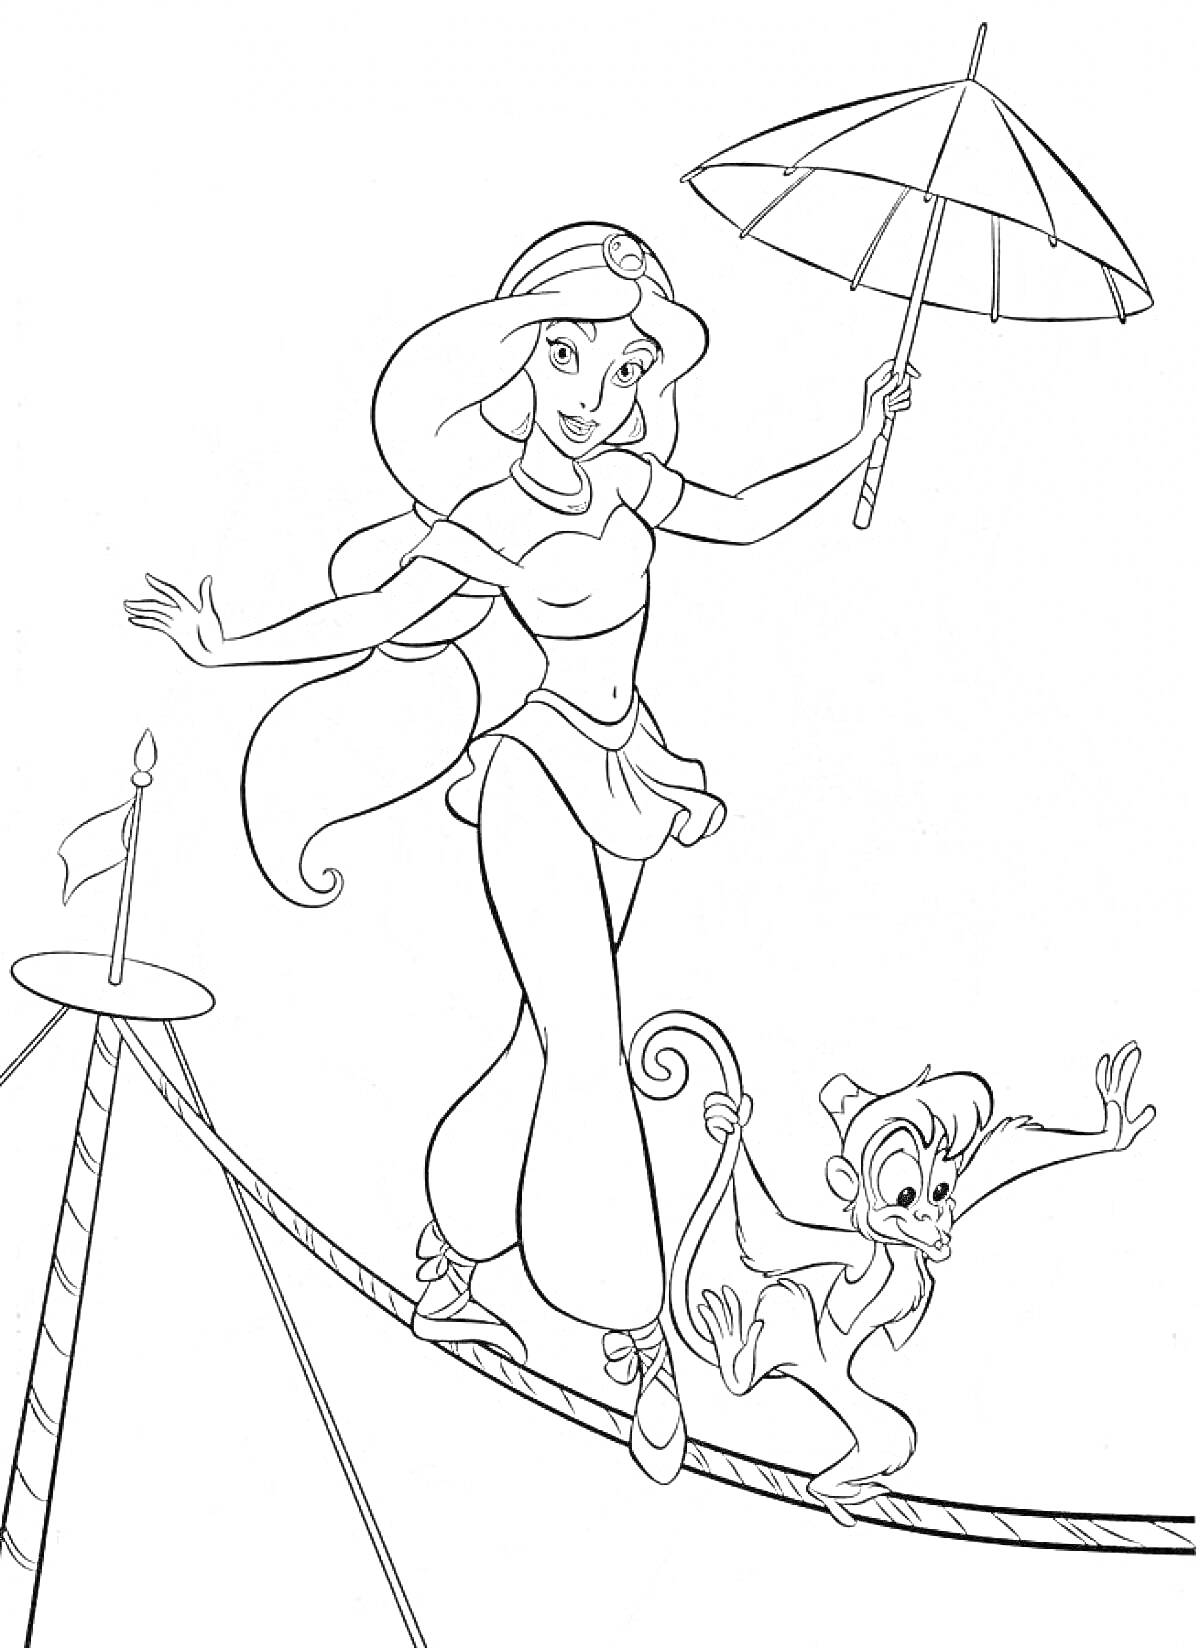 Принцесса Жасмин идет по канату с зонтиком и обезьянкой